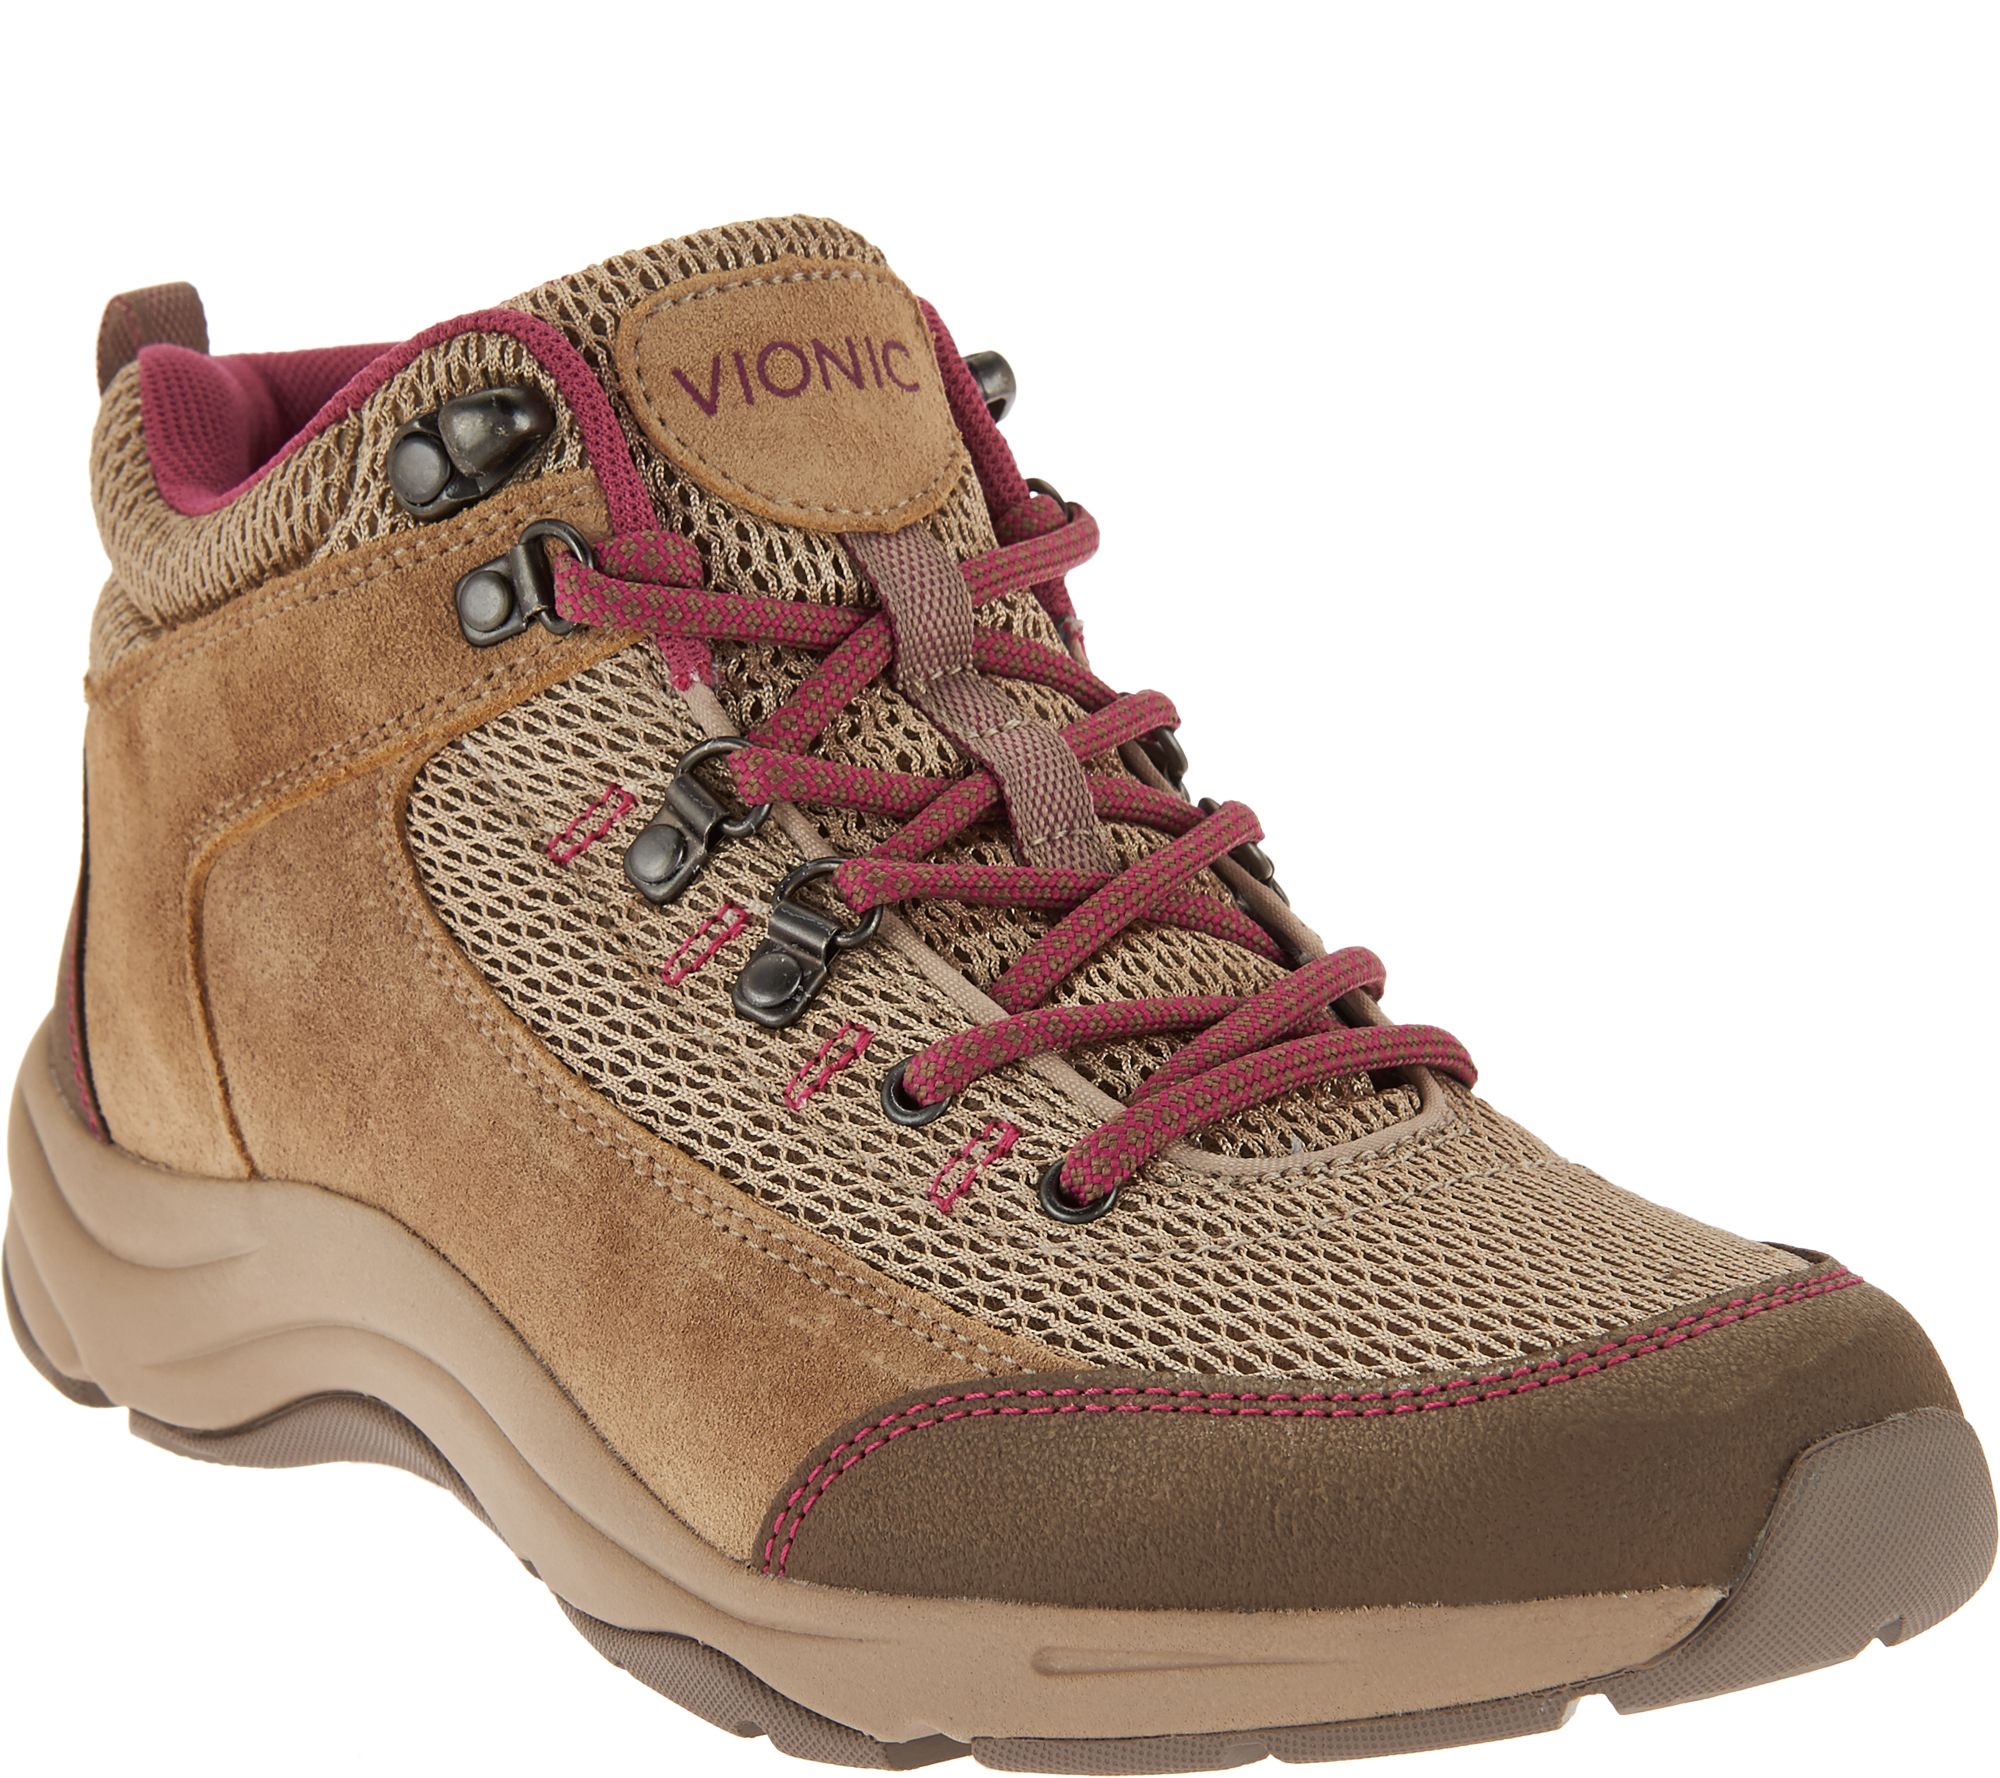 vionic hiking boots